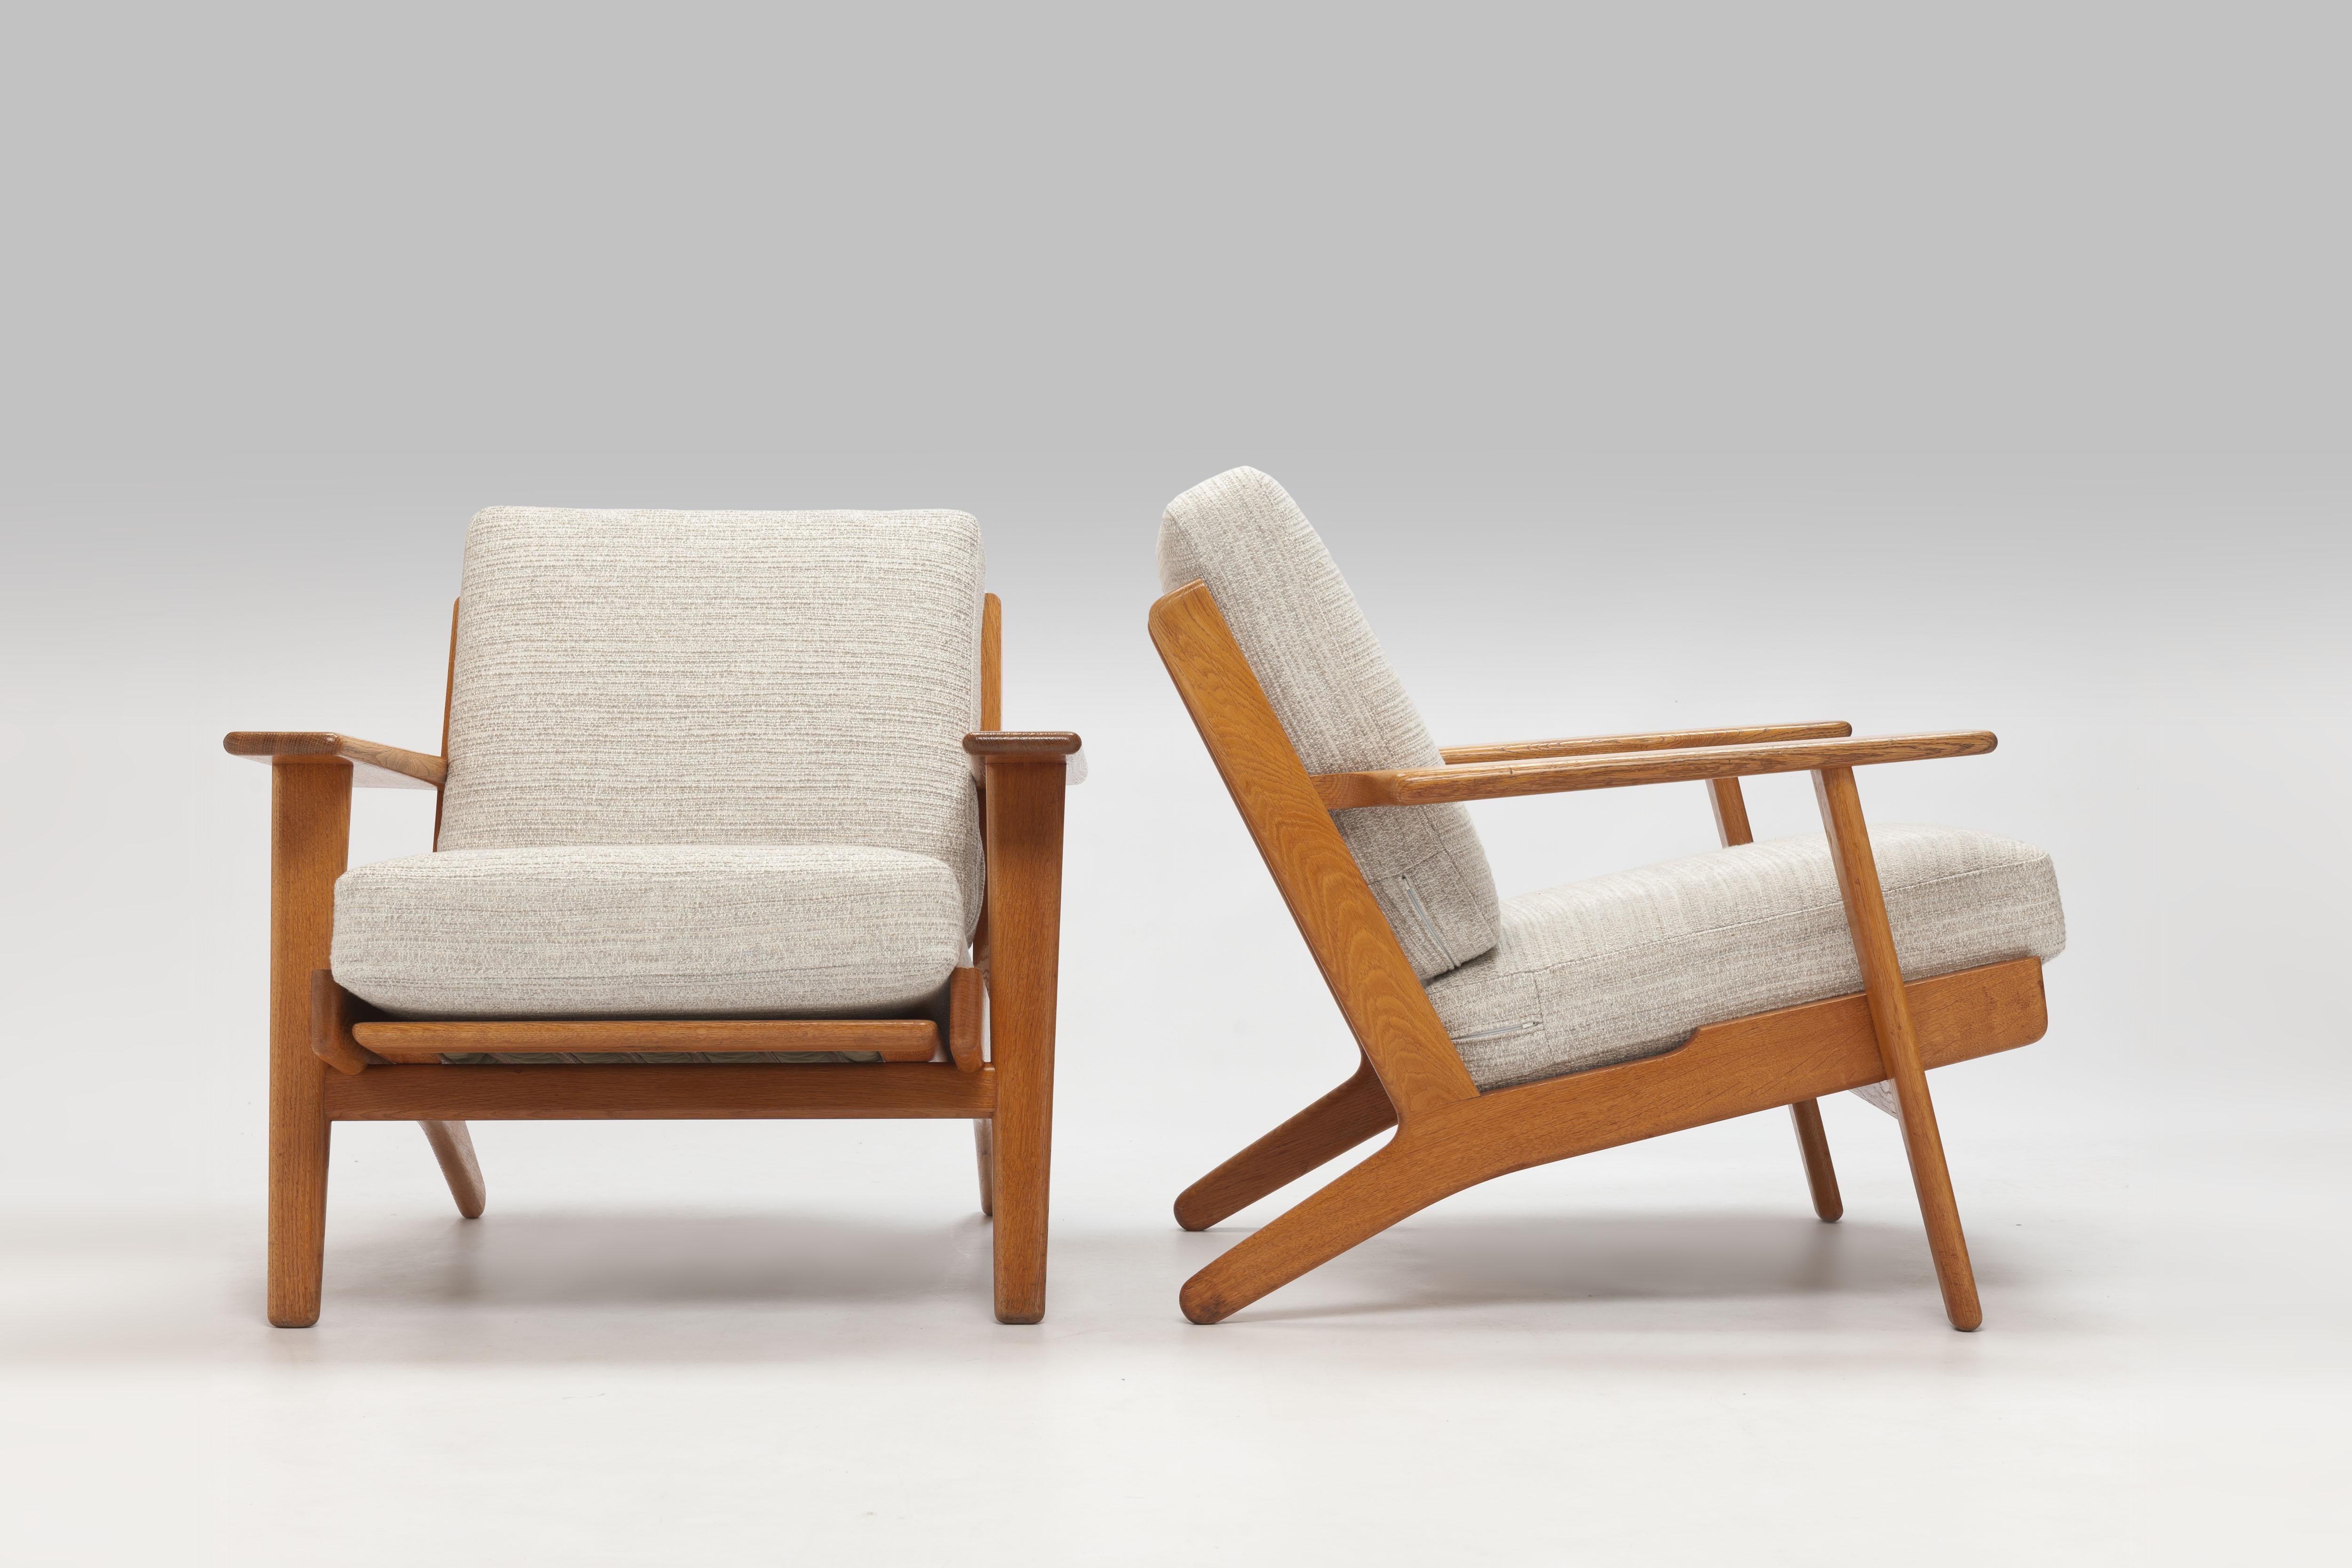 Hans Wegner Oak Lounge Chair GE290 by GETAMA '1 of 3 Chairs' 9